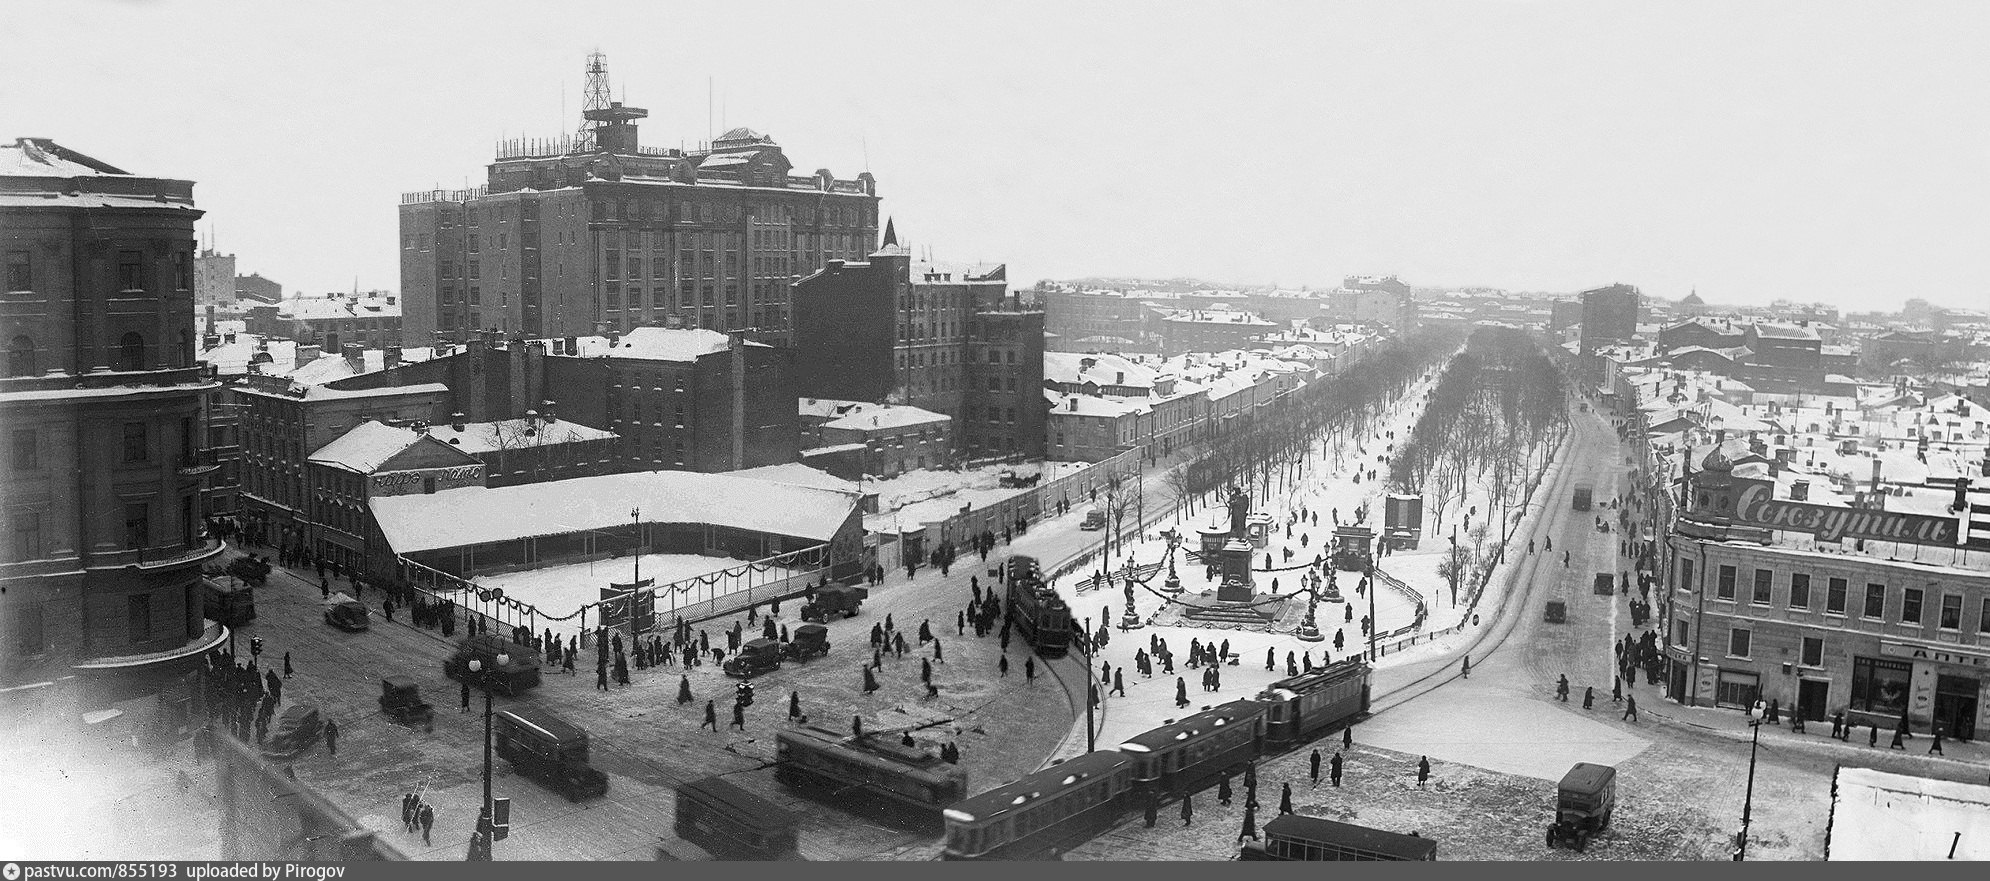 Пушкинская площадь 1930е